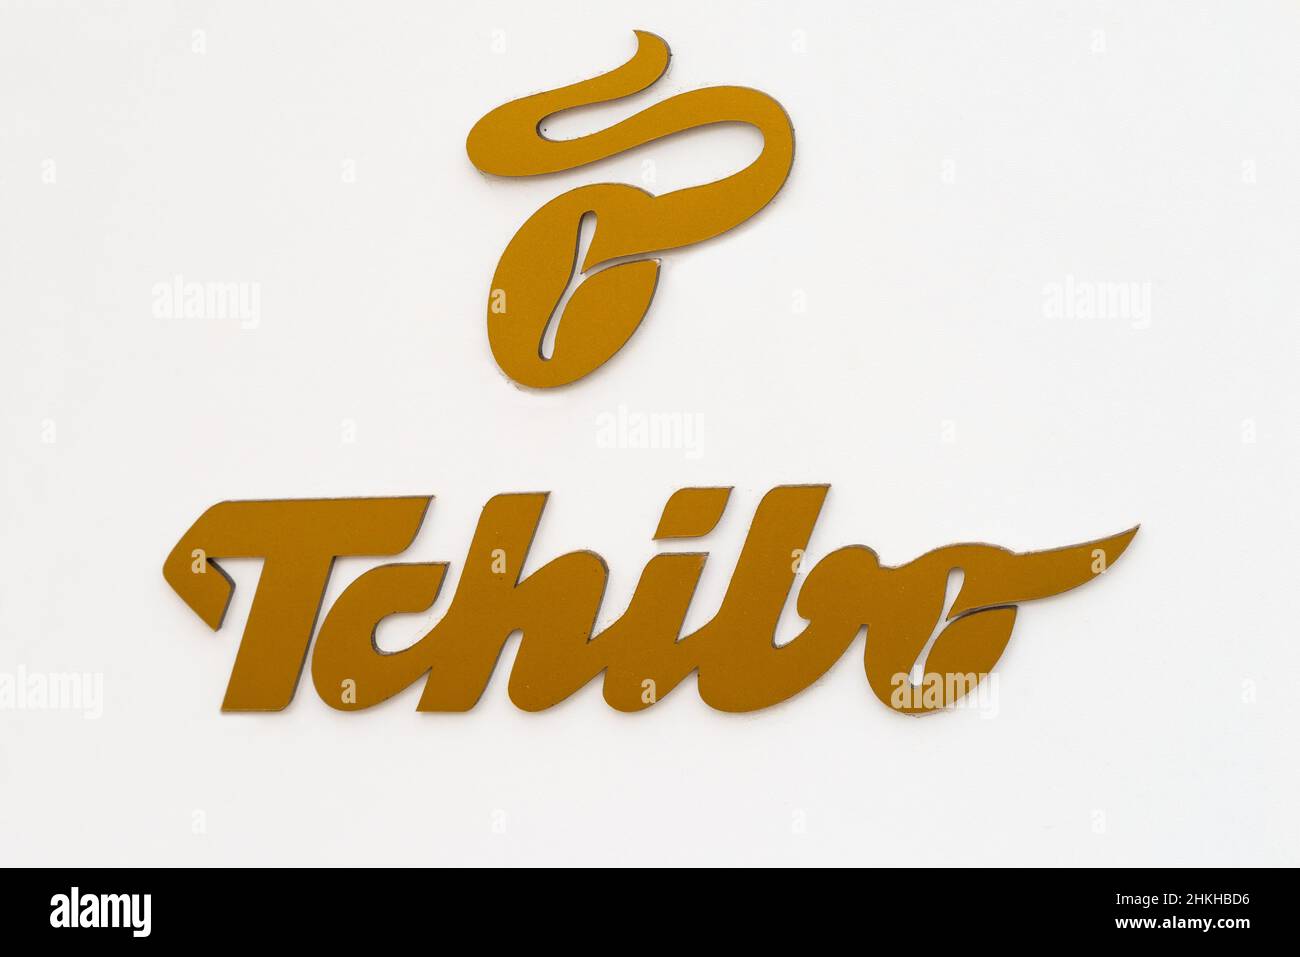 Austria, 2022: Logotipo Golden Tchibo en la fachada blanca de la casa. Tchibo es una cadena alemana de cafeterías y tiendas de café Foto de stock